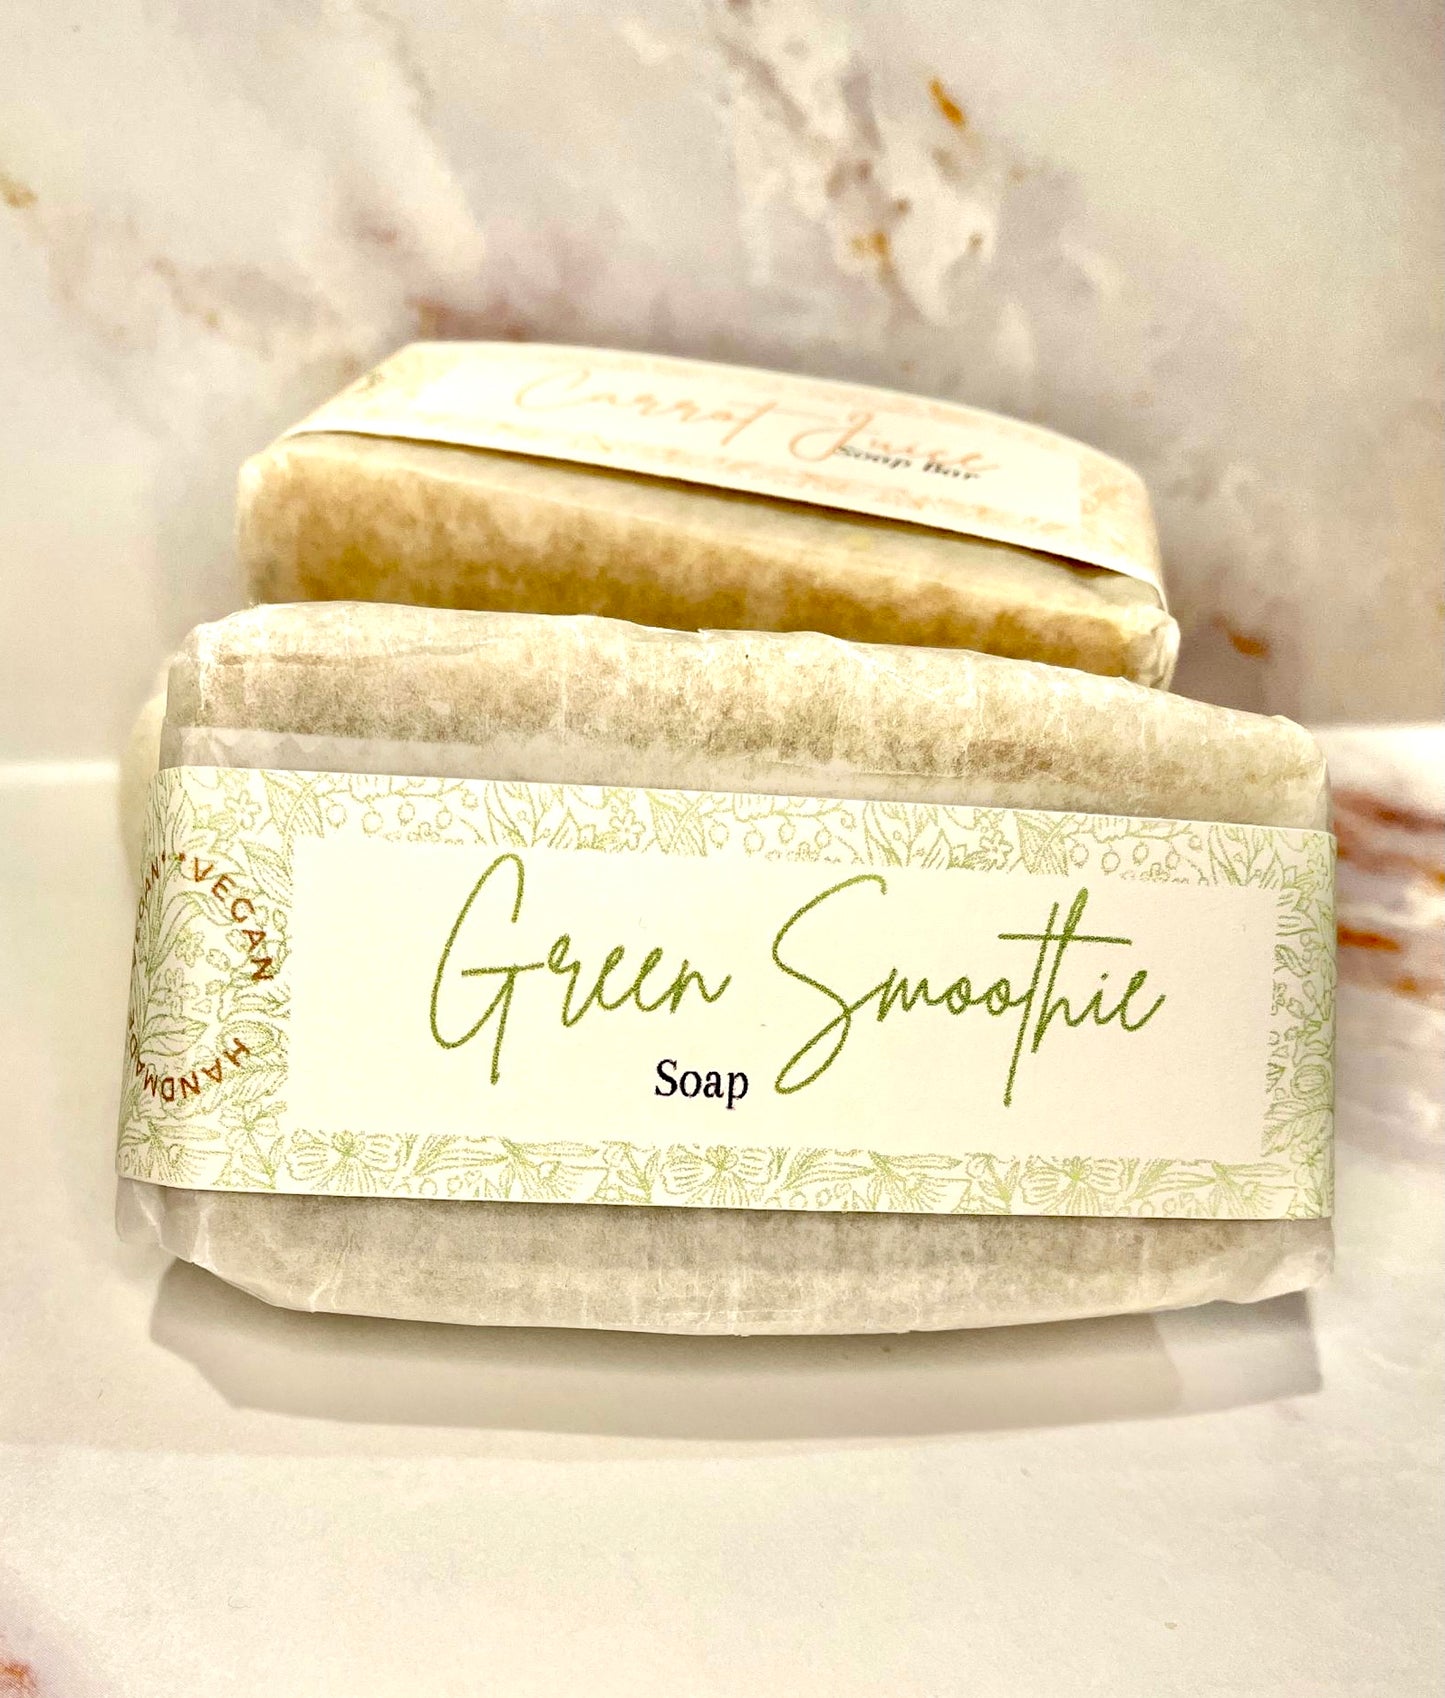 Green Smoothie Vegan Soap Bar